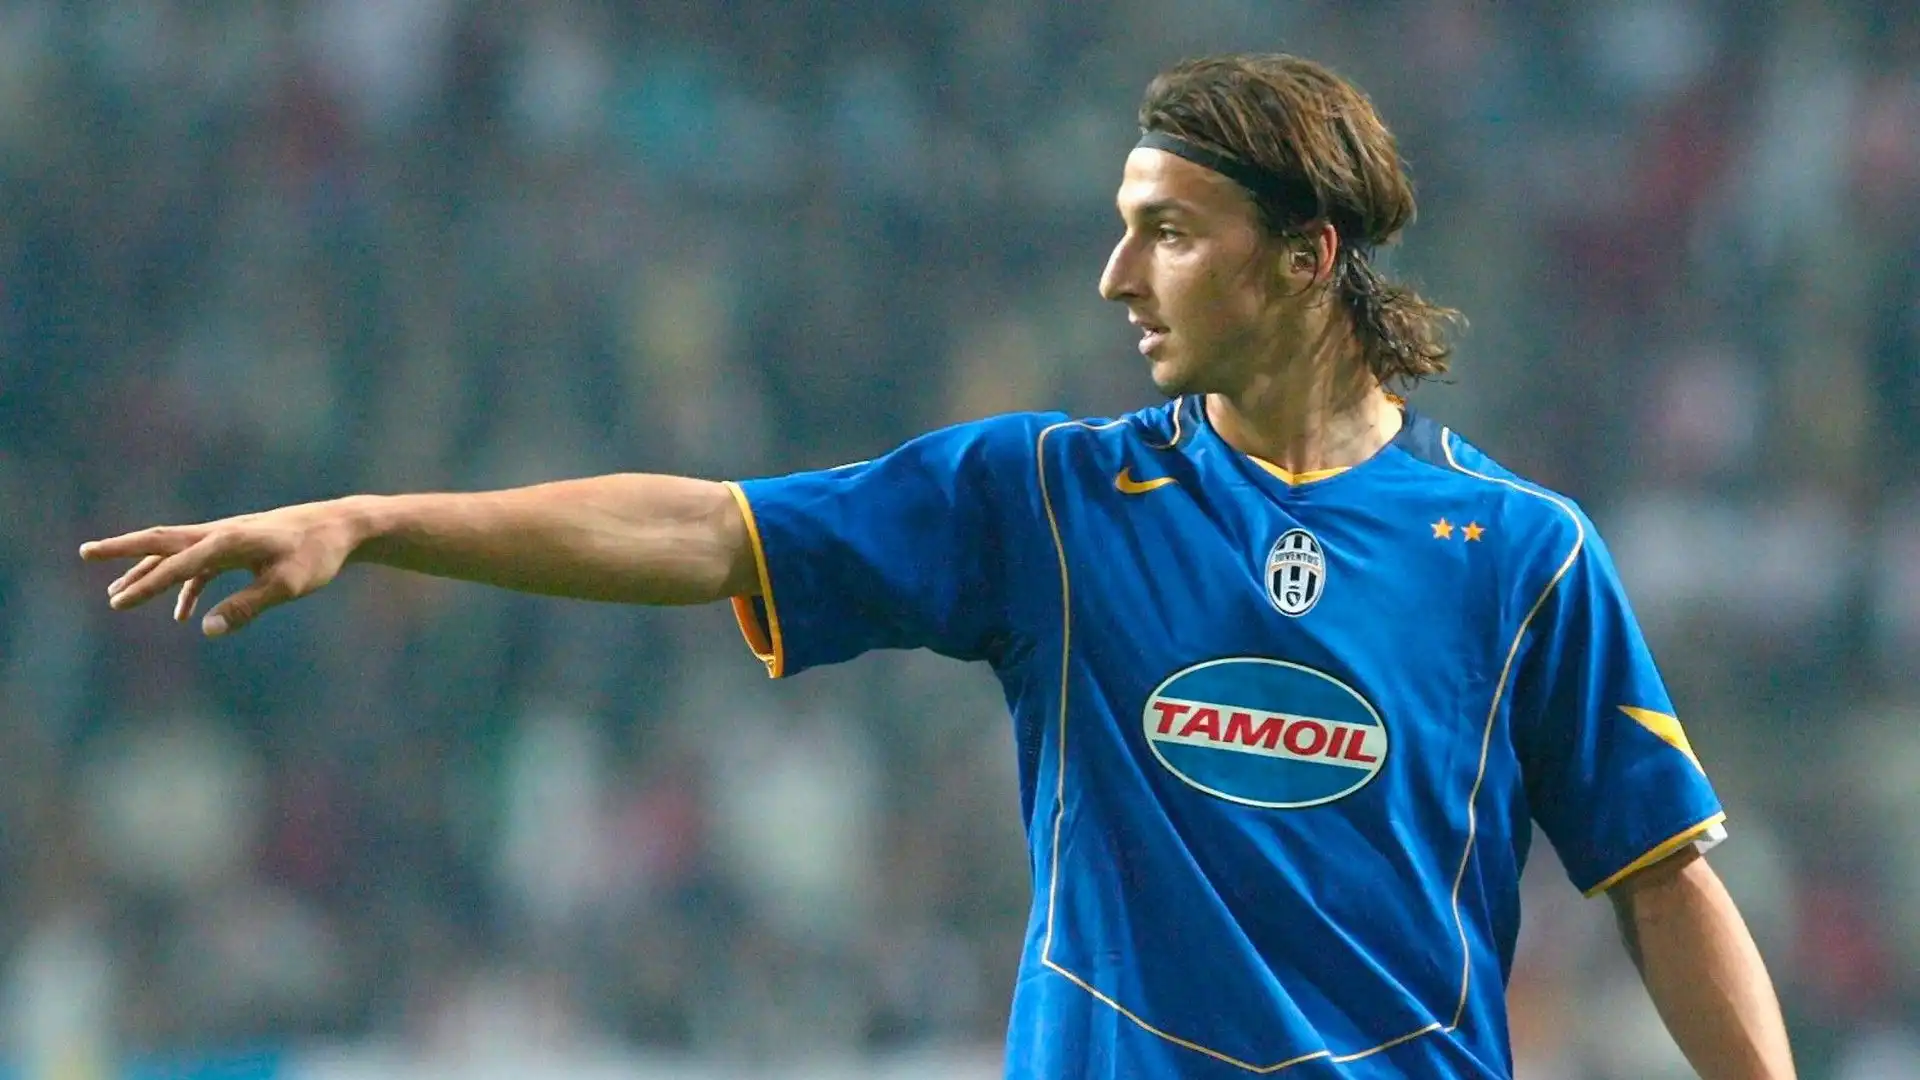 Con la maglia della Juventus Zlatan Ibrahimovic ha segnato 26 gol in 92 partite giocate